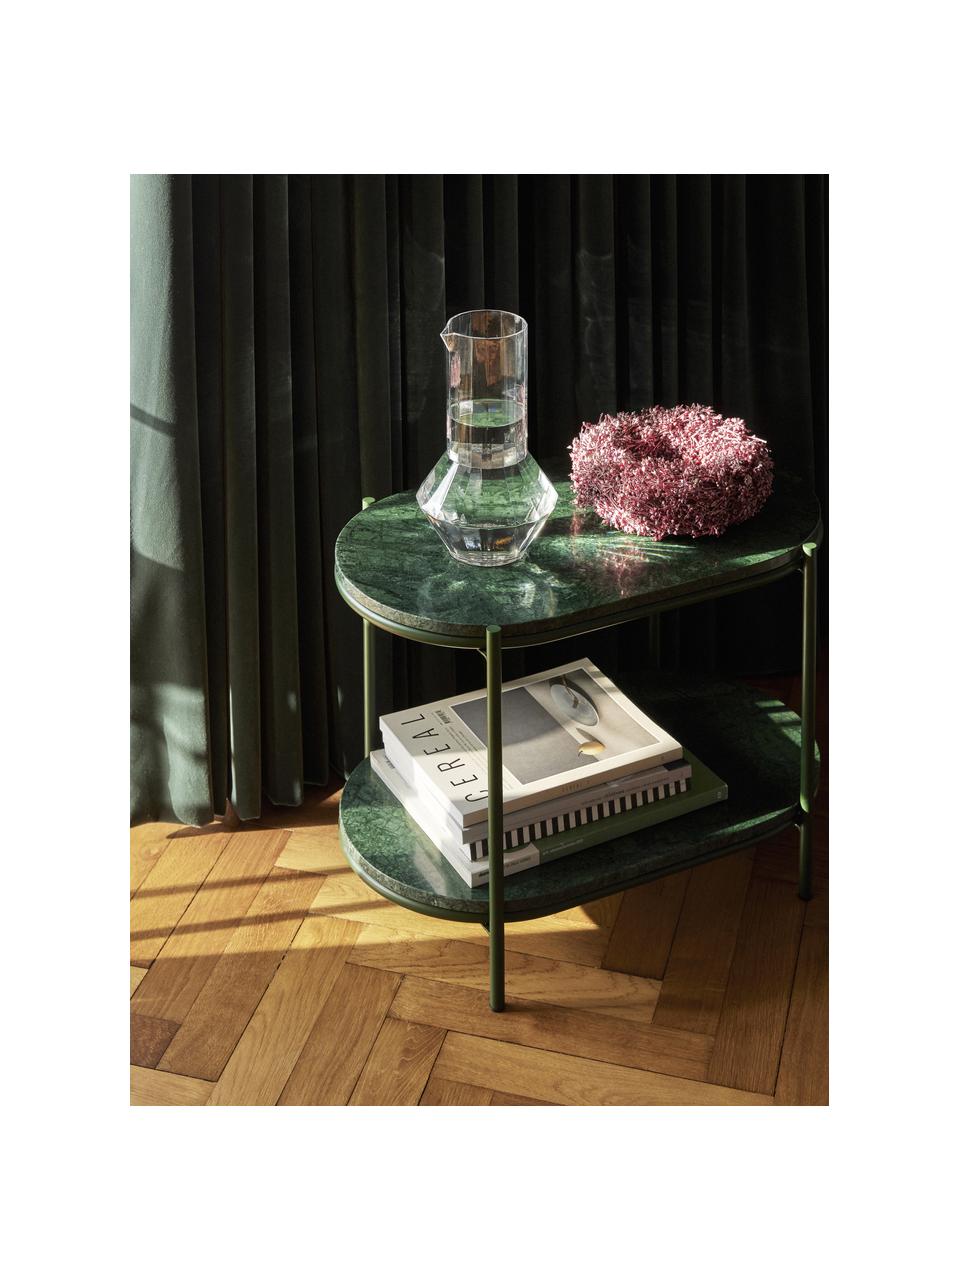 Oválný mramorový odkládací stolek Nusa, Tmavě zelená, mramorovaná, Š 58 cm, V 40 cm